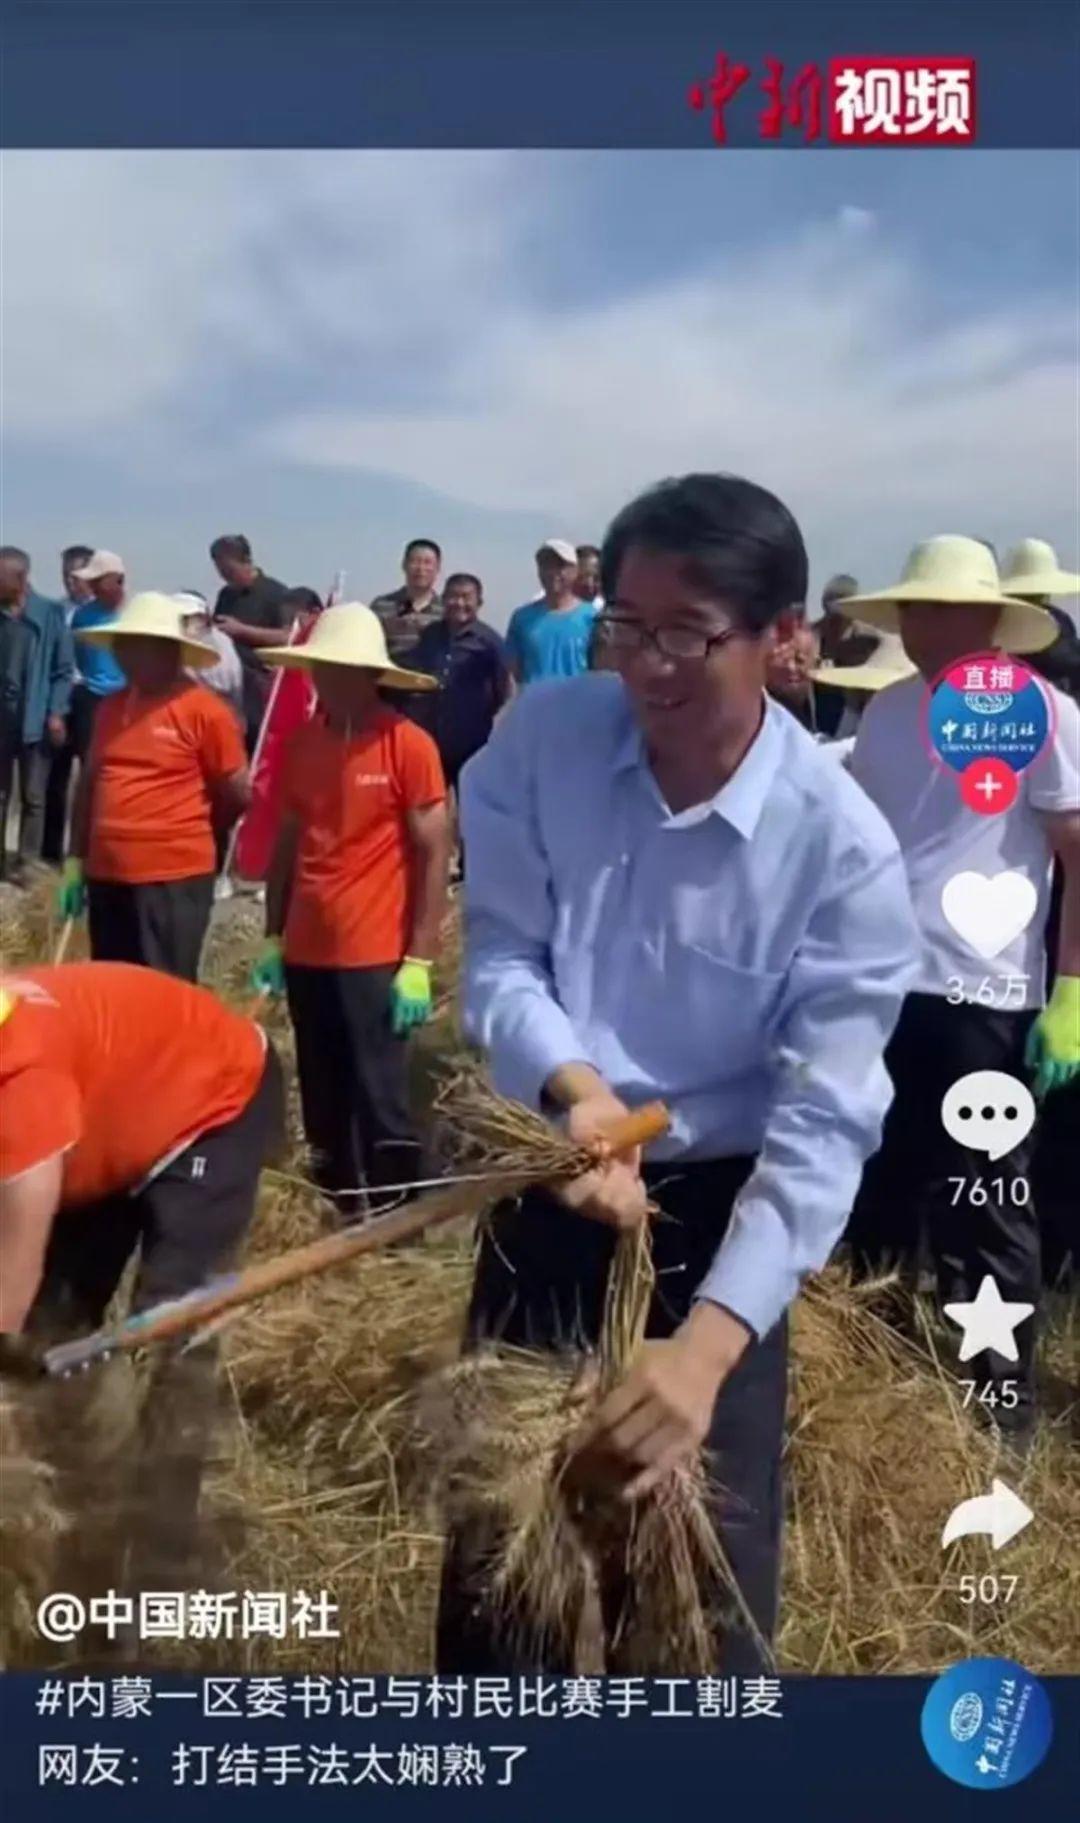 内蒙古一区委书记参加手工割麦比赛被赞“手法娴熟”，曾多次到田间地头调研